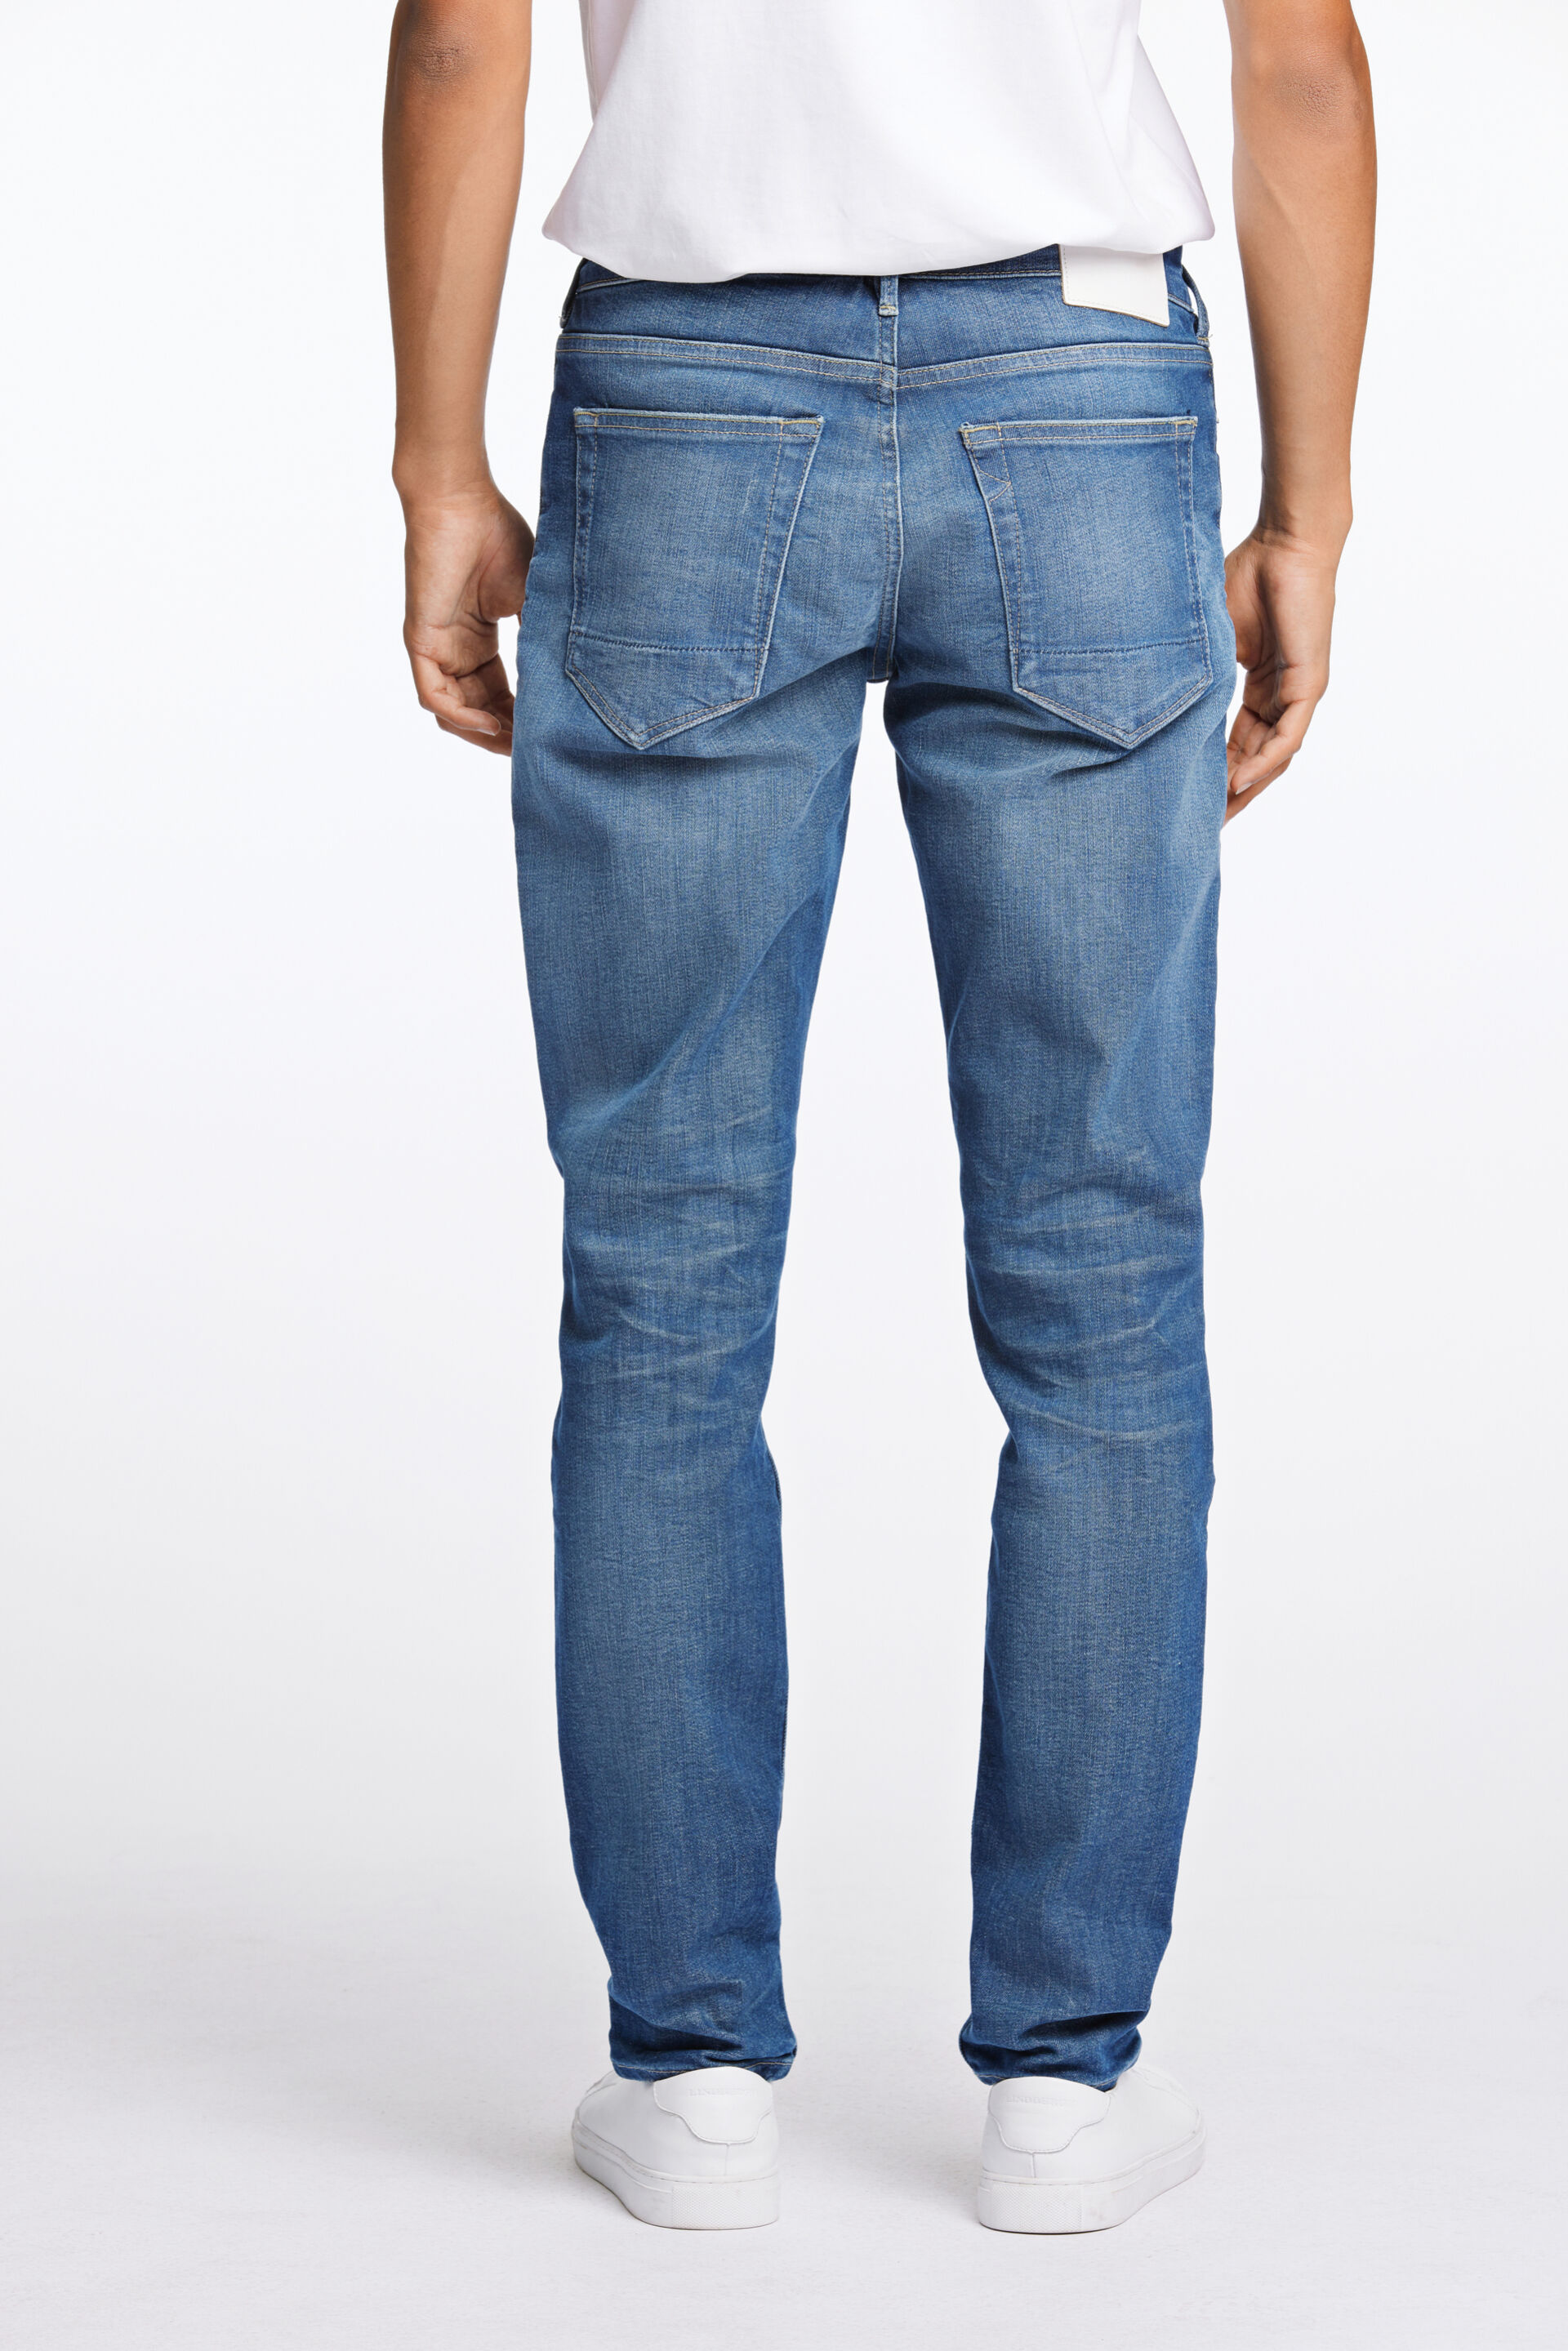 Junk de Luxe  Jeans 60-022010